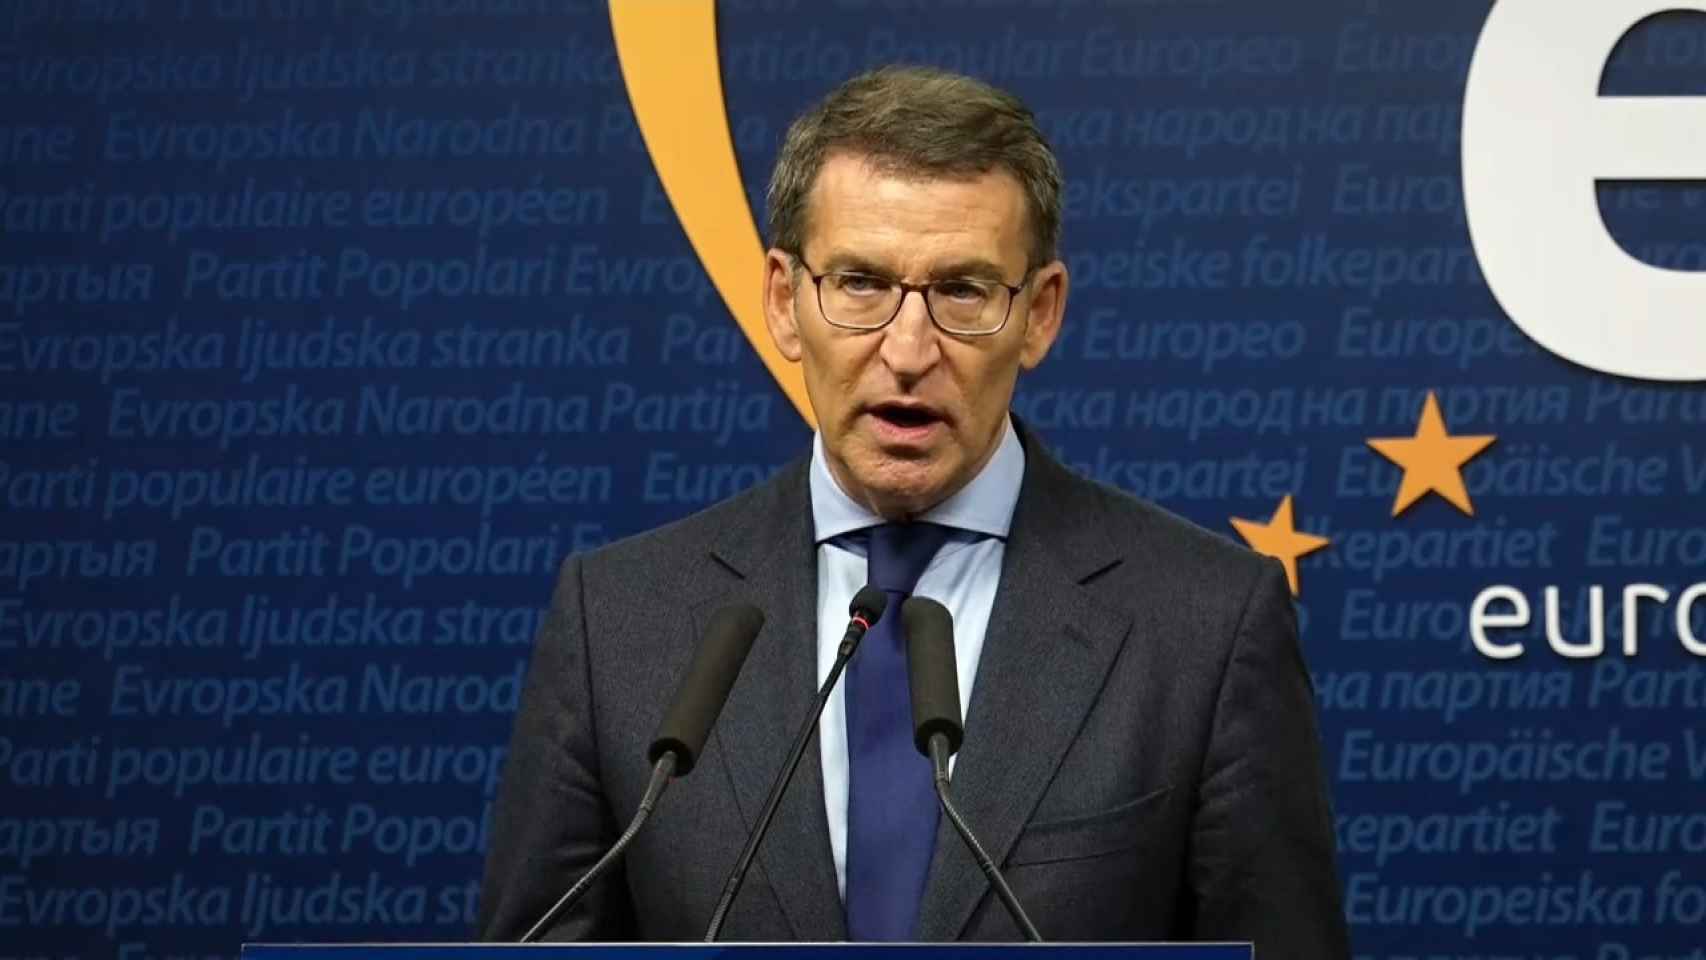 Feijóo critica la reforma de pensiones, en Bruselas